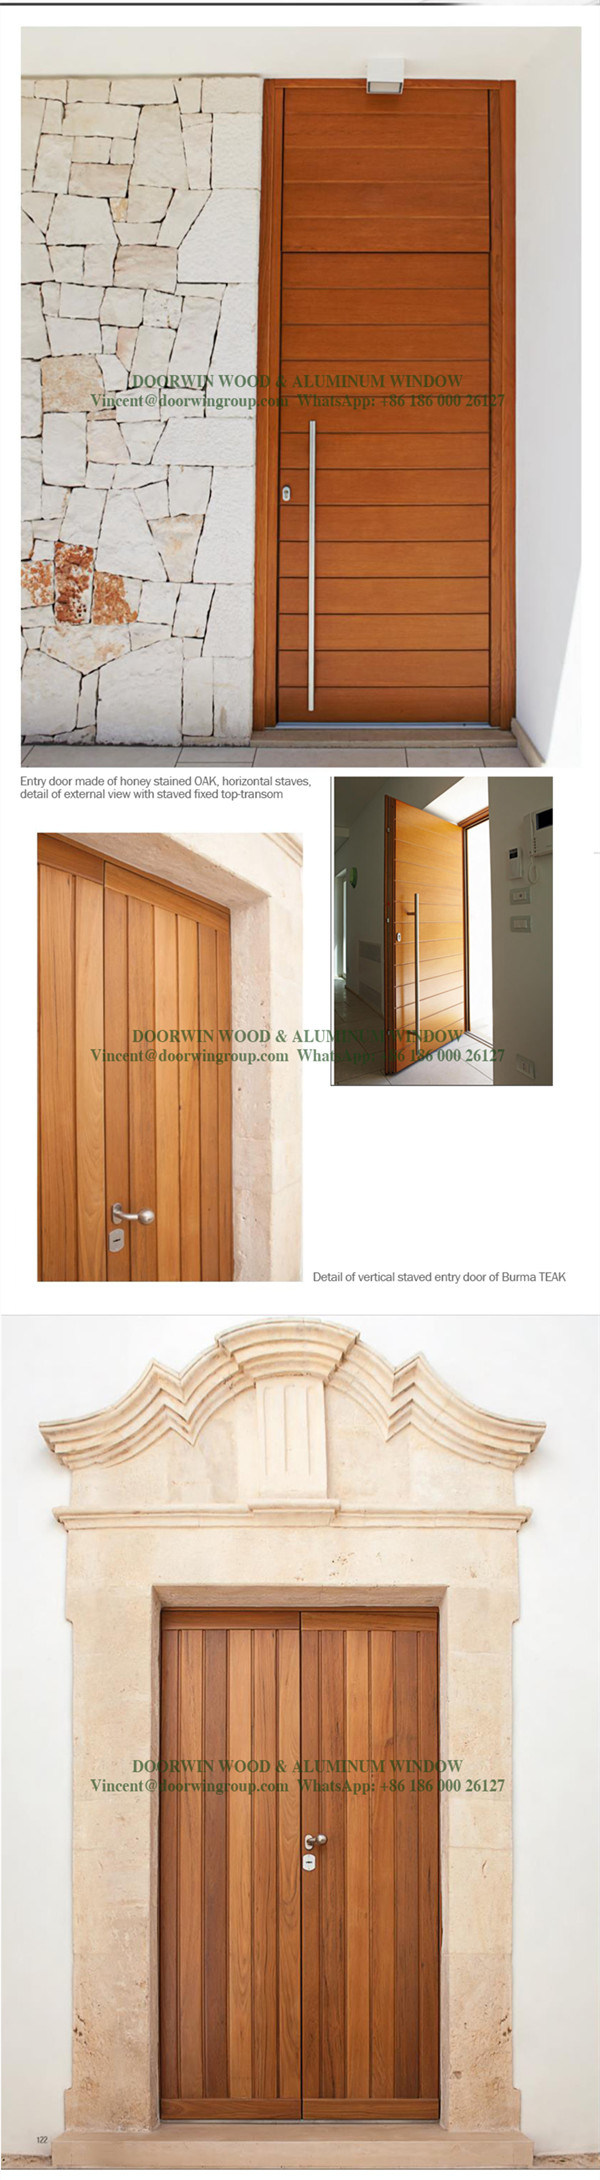 Oak Interior Wooden Double Safety Door, Arch Top Design Glass French Door, One Sash Entry Door